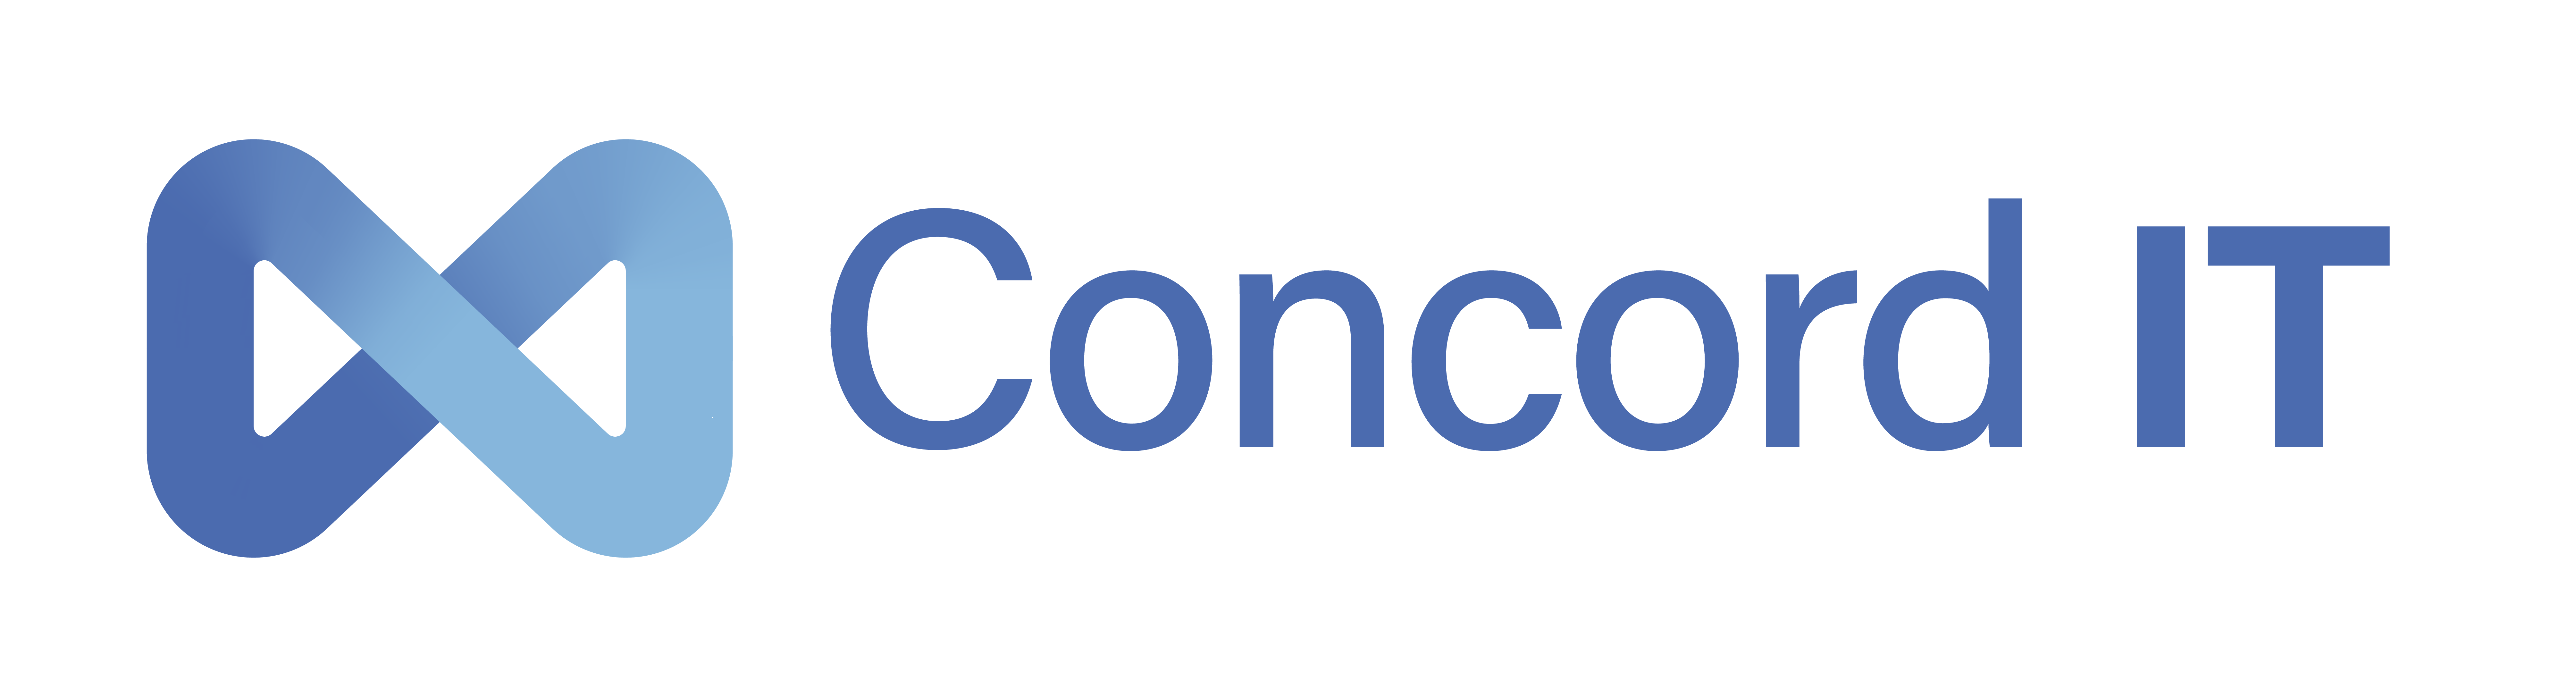 Concord IT Logo